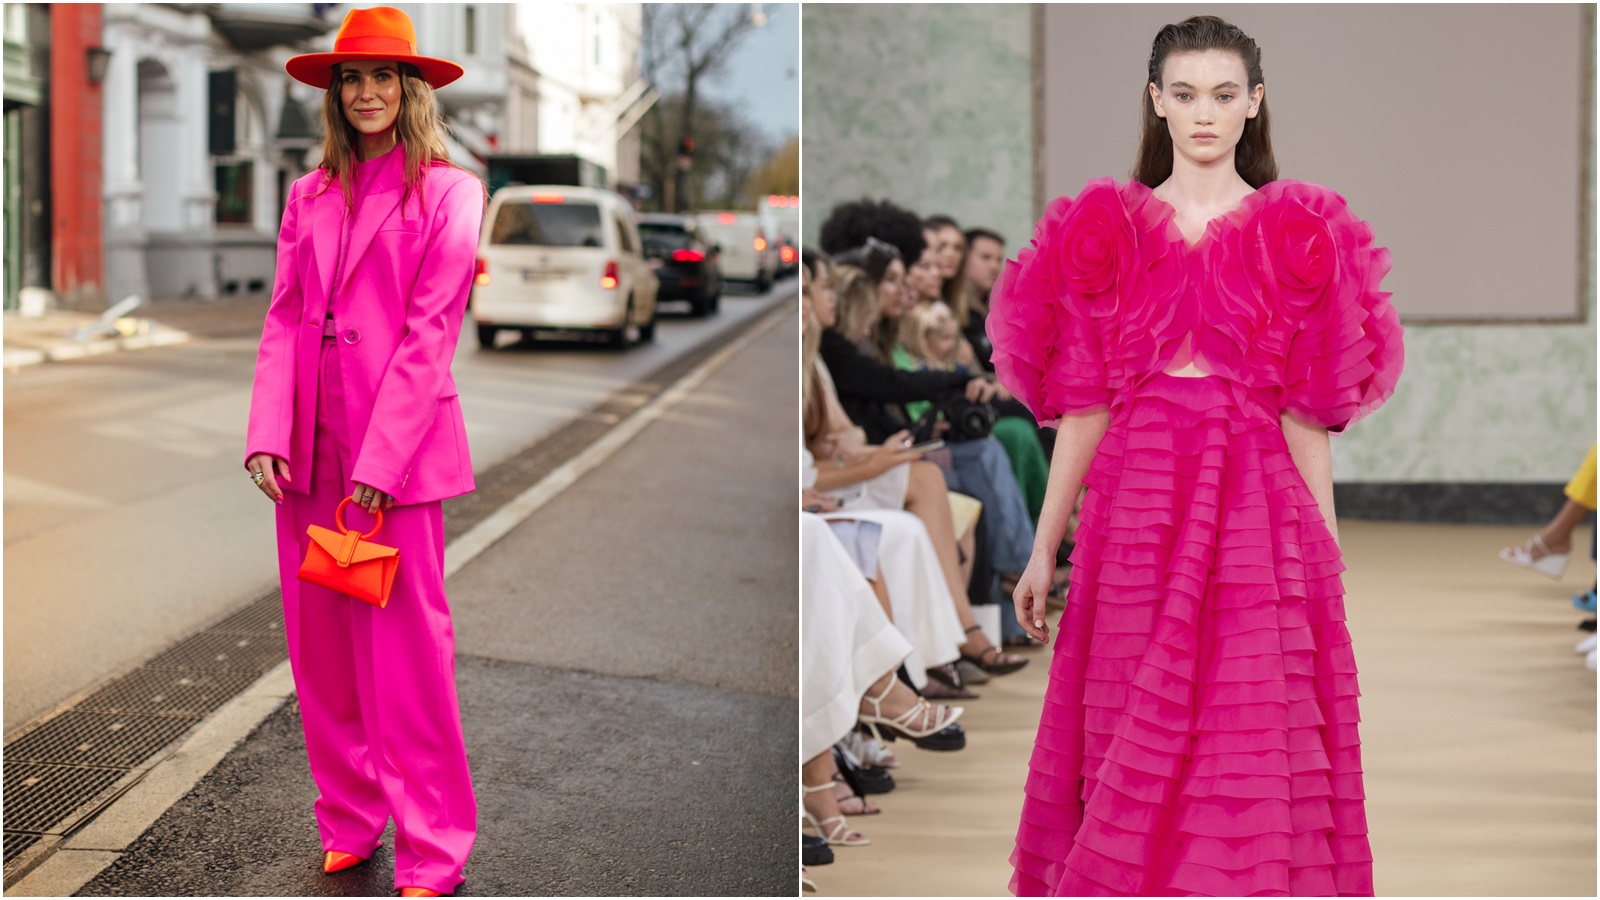 Streetstyle inspiracija: Ružičasta je boja sezone